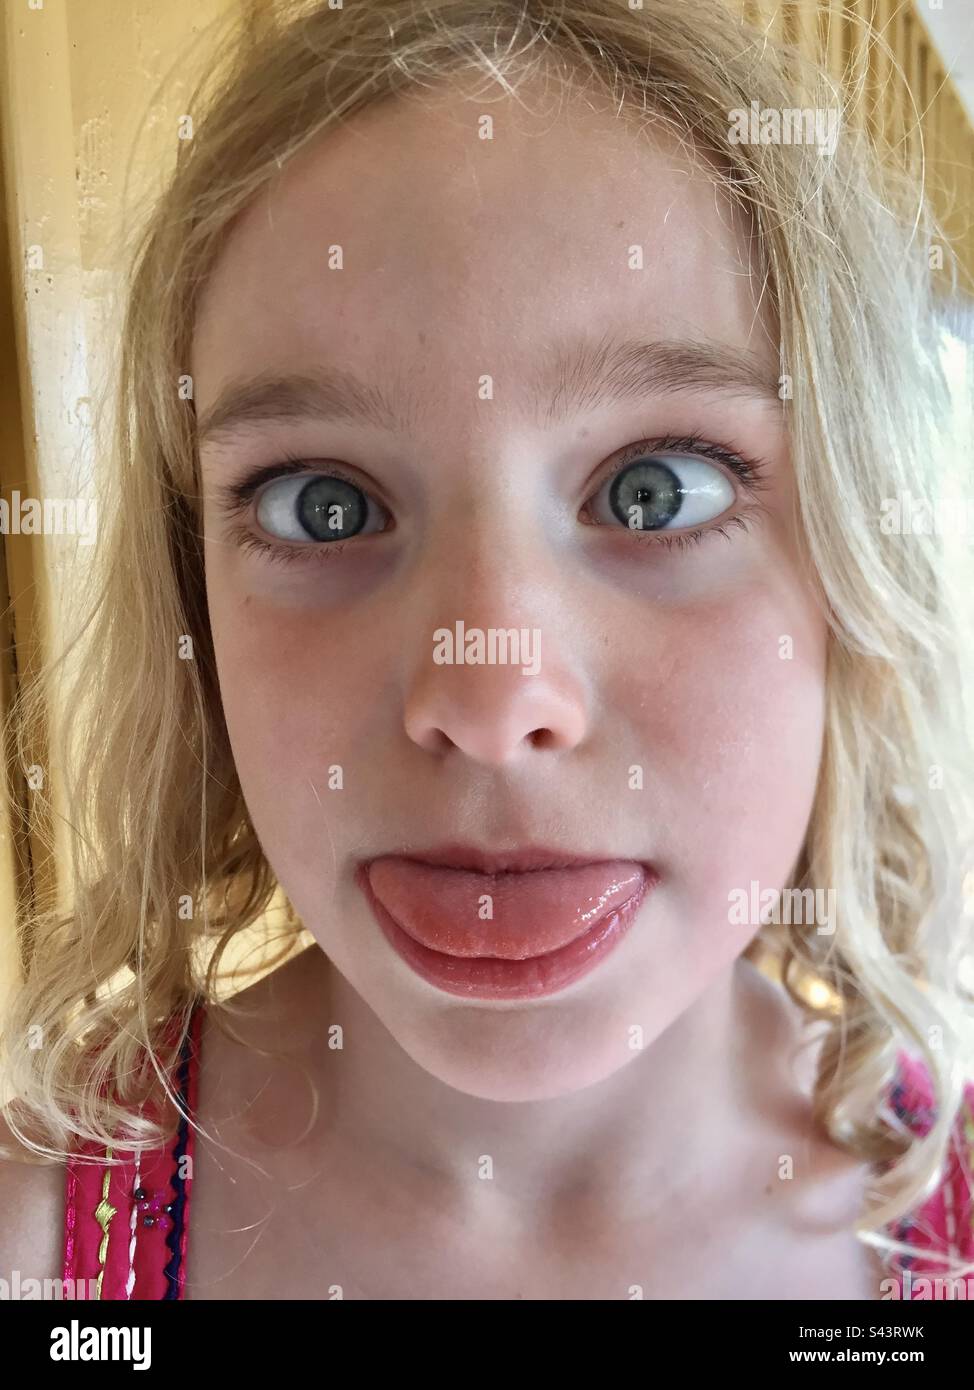 Una giovane ragazza di 7 anni sul dissuasore circa attraversare i suoi occhi e poking la lingua fuori che sta attaccando la lingua fuori che fa una faccia Foto Stock